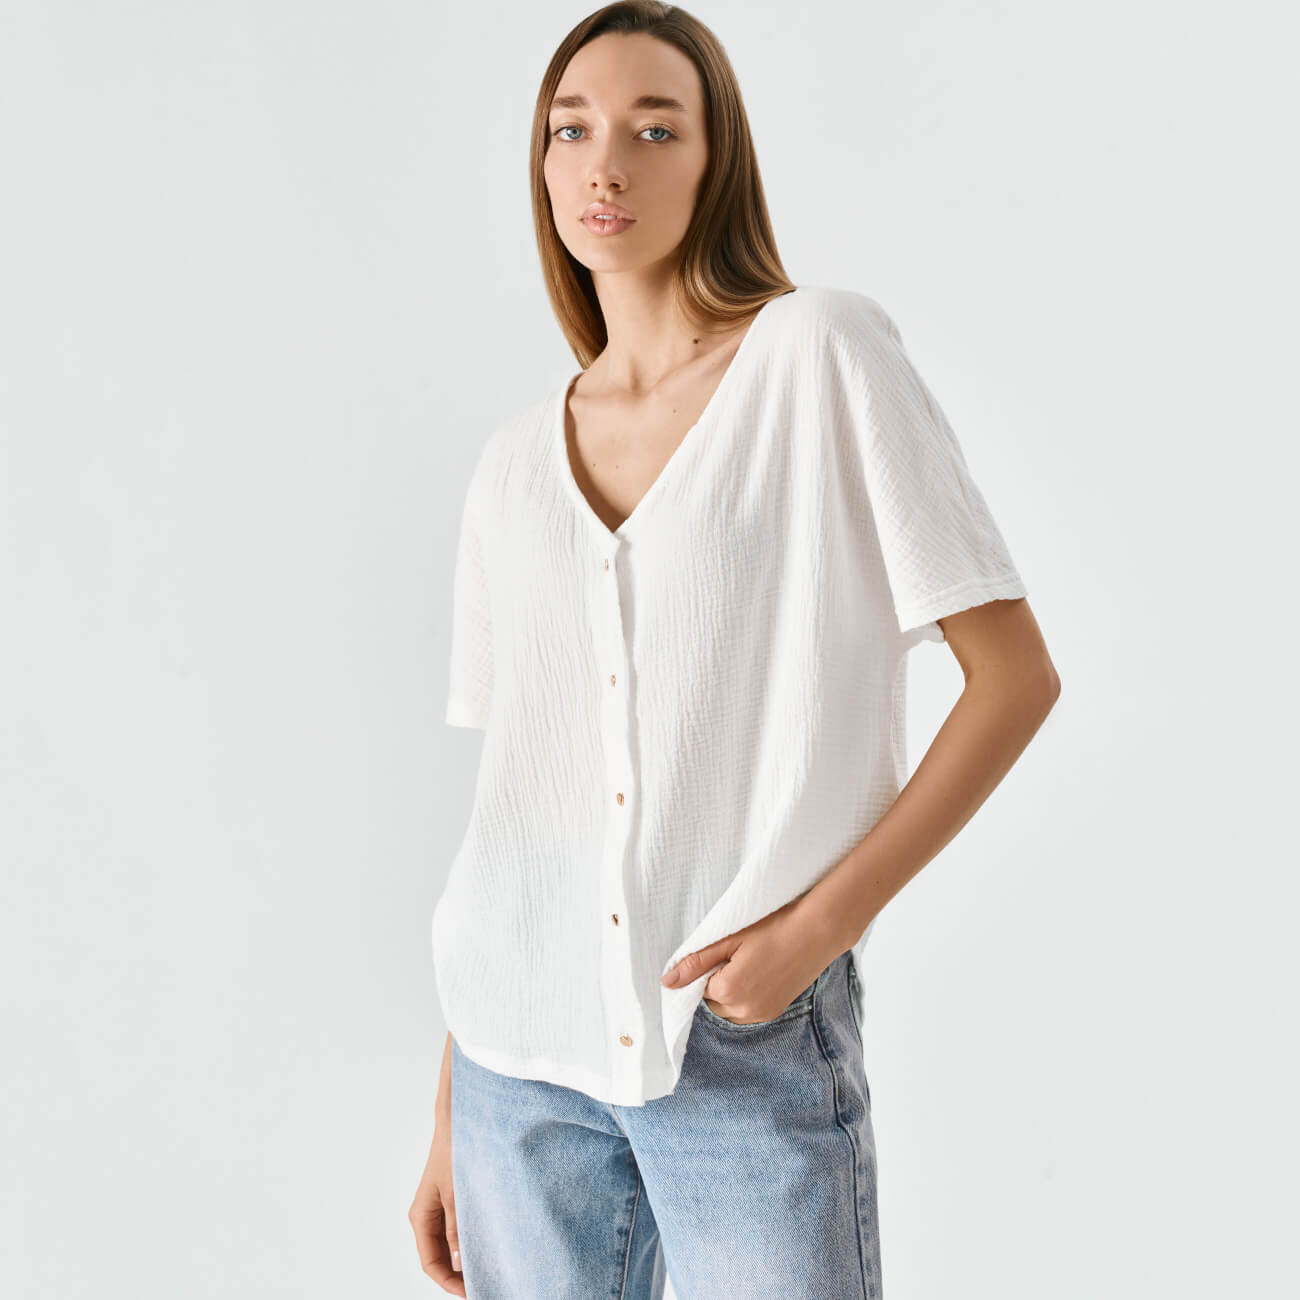 Рубашка женская, р. XL, с коротким рукавом, муслин, белая, Allison